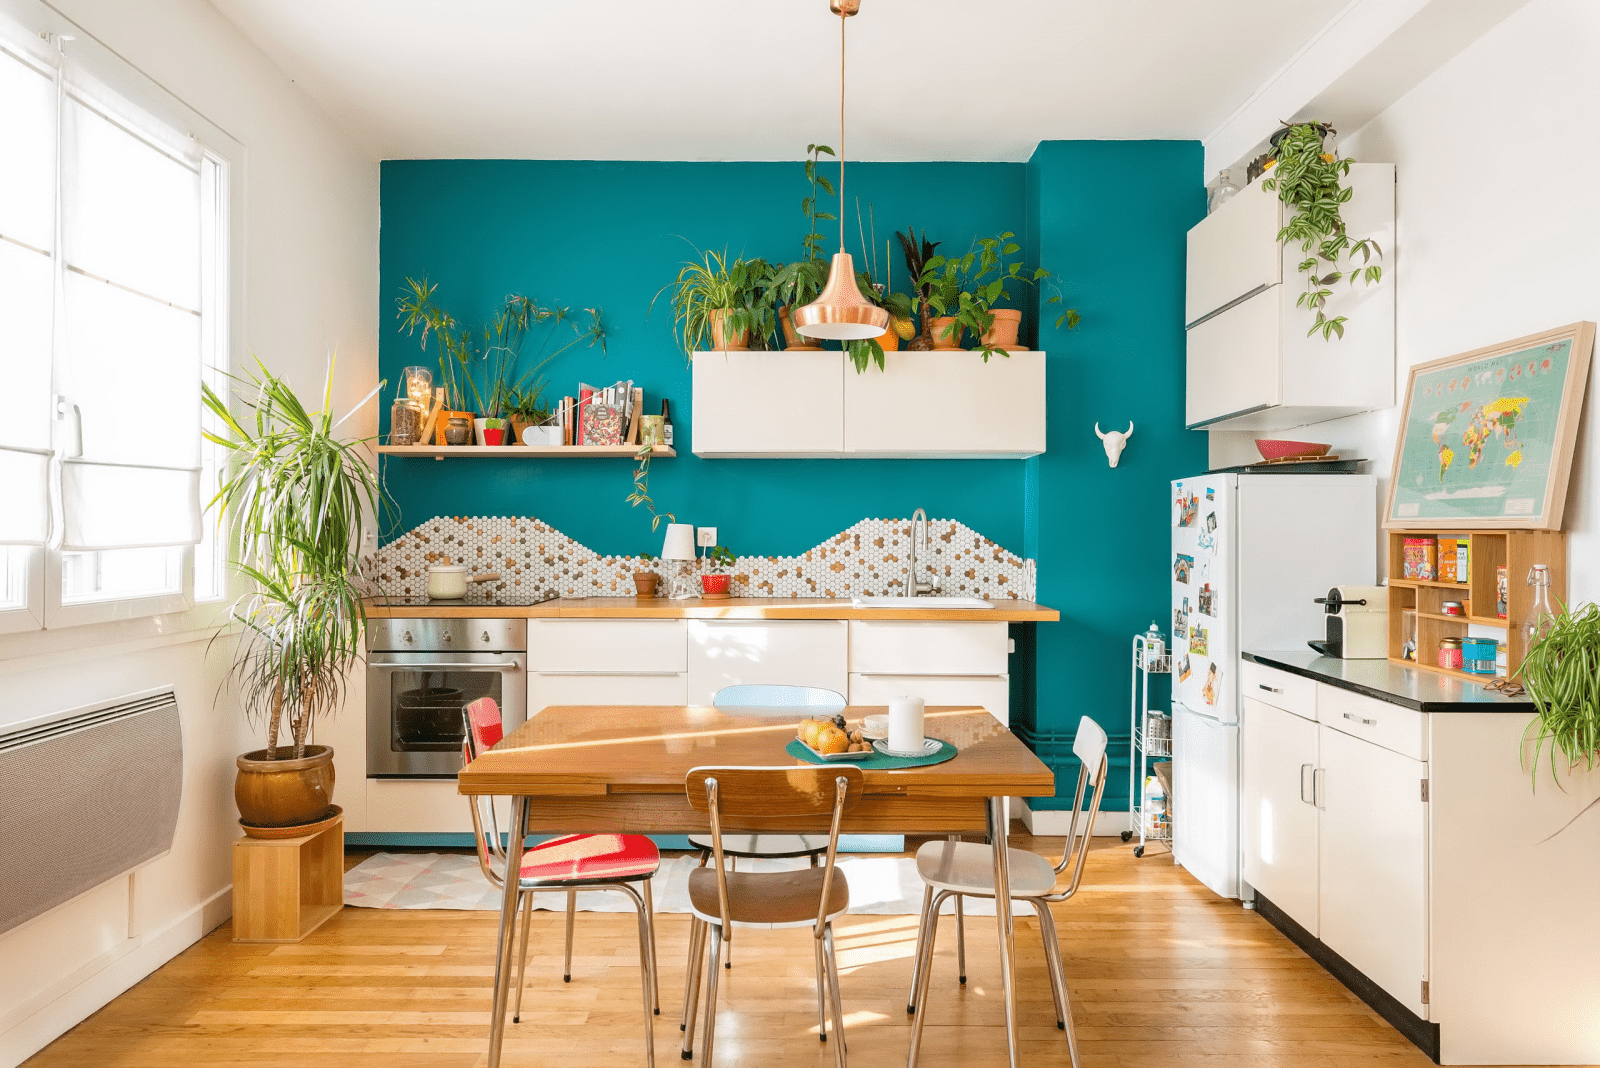 Отделка стен на кухне: 125 фото пошагового описания отделки и лучшие решения дизайнеров